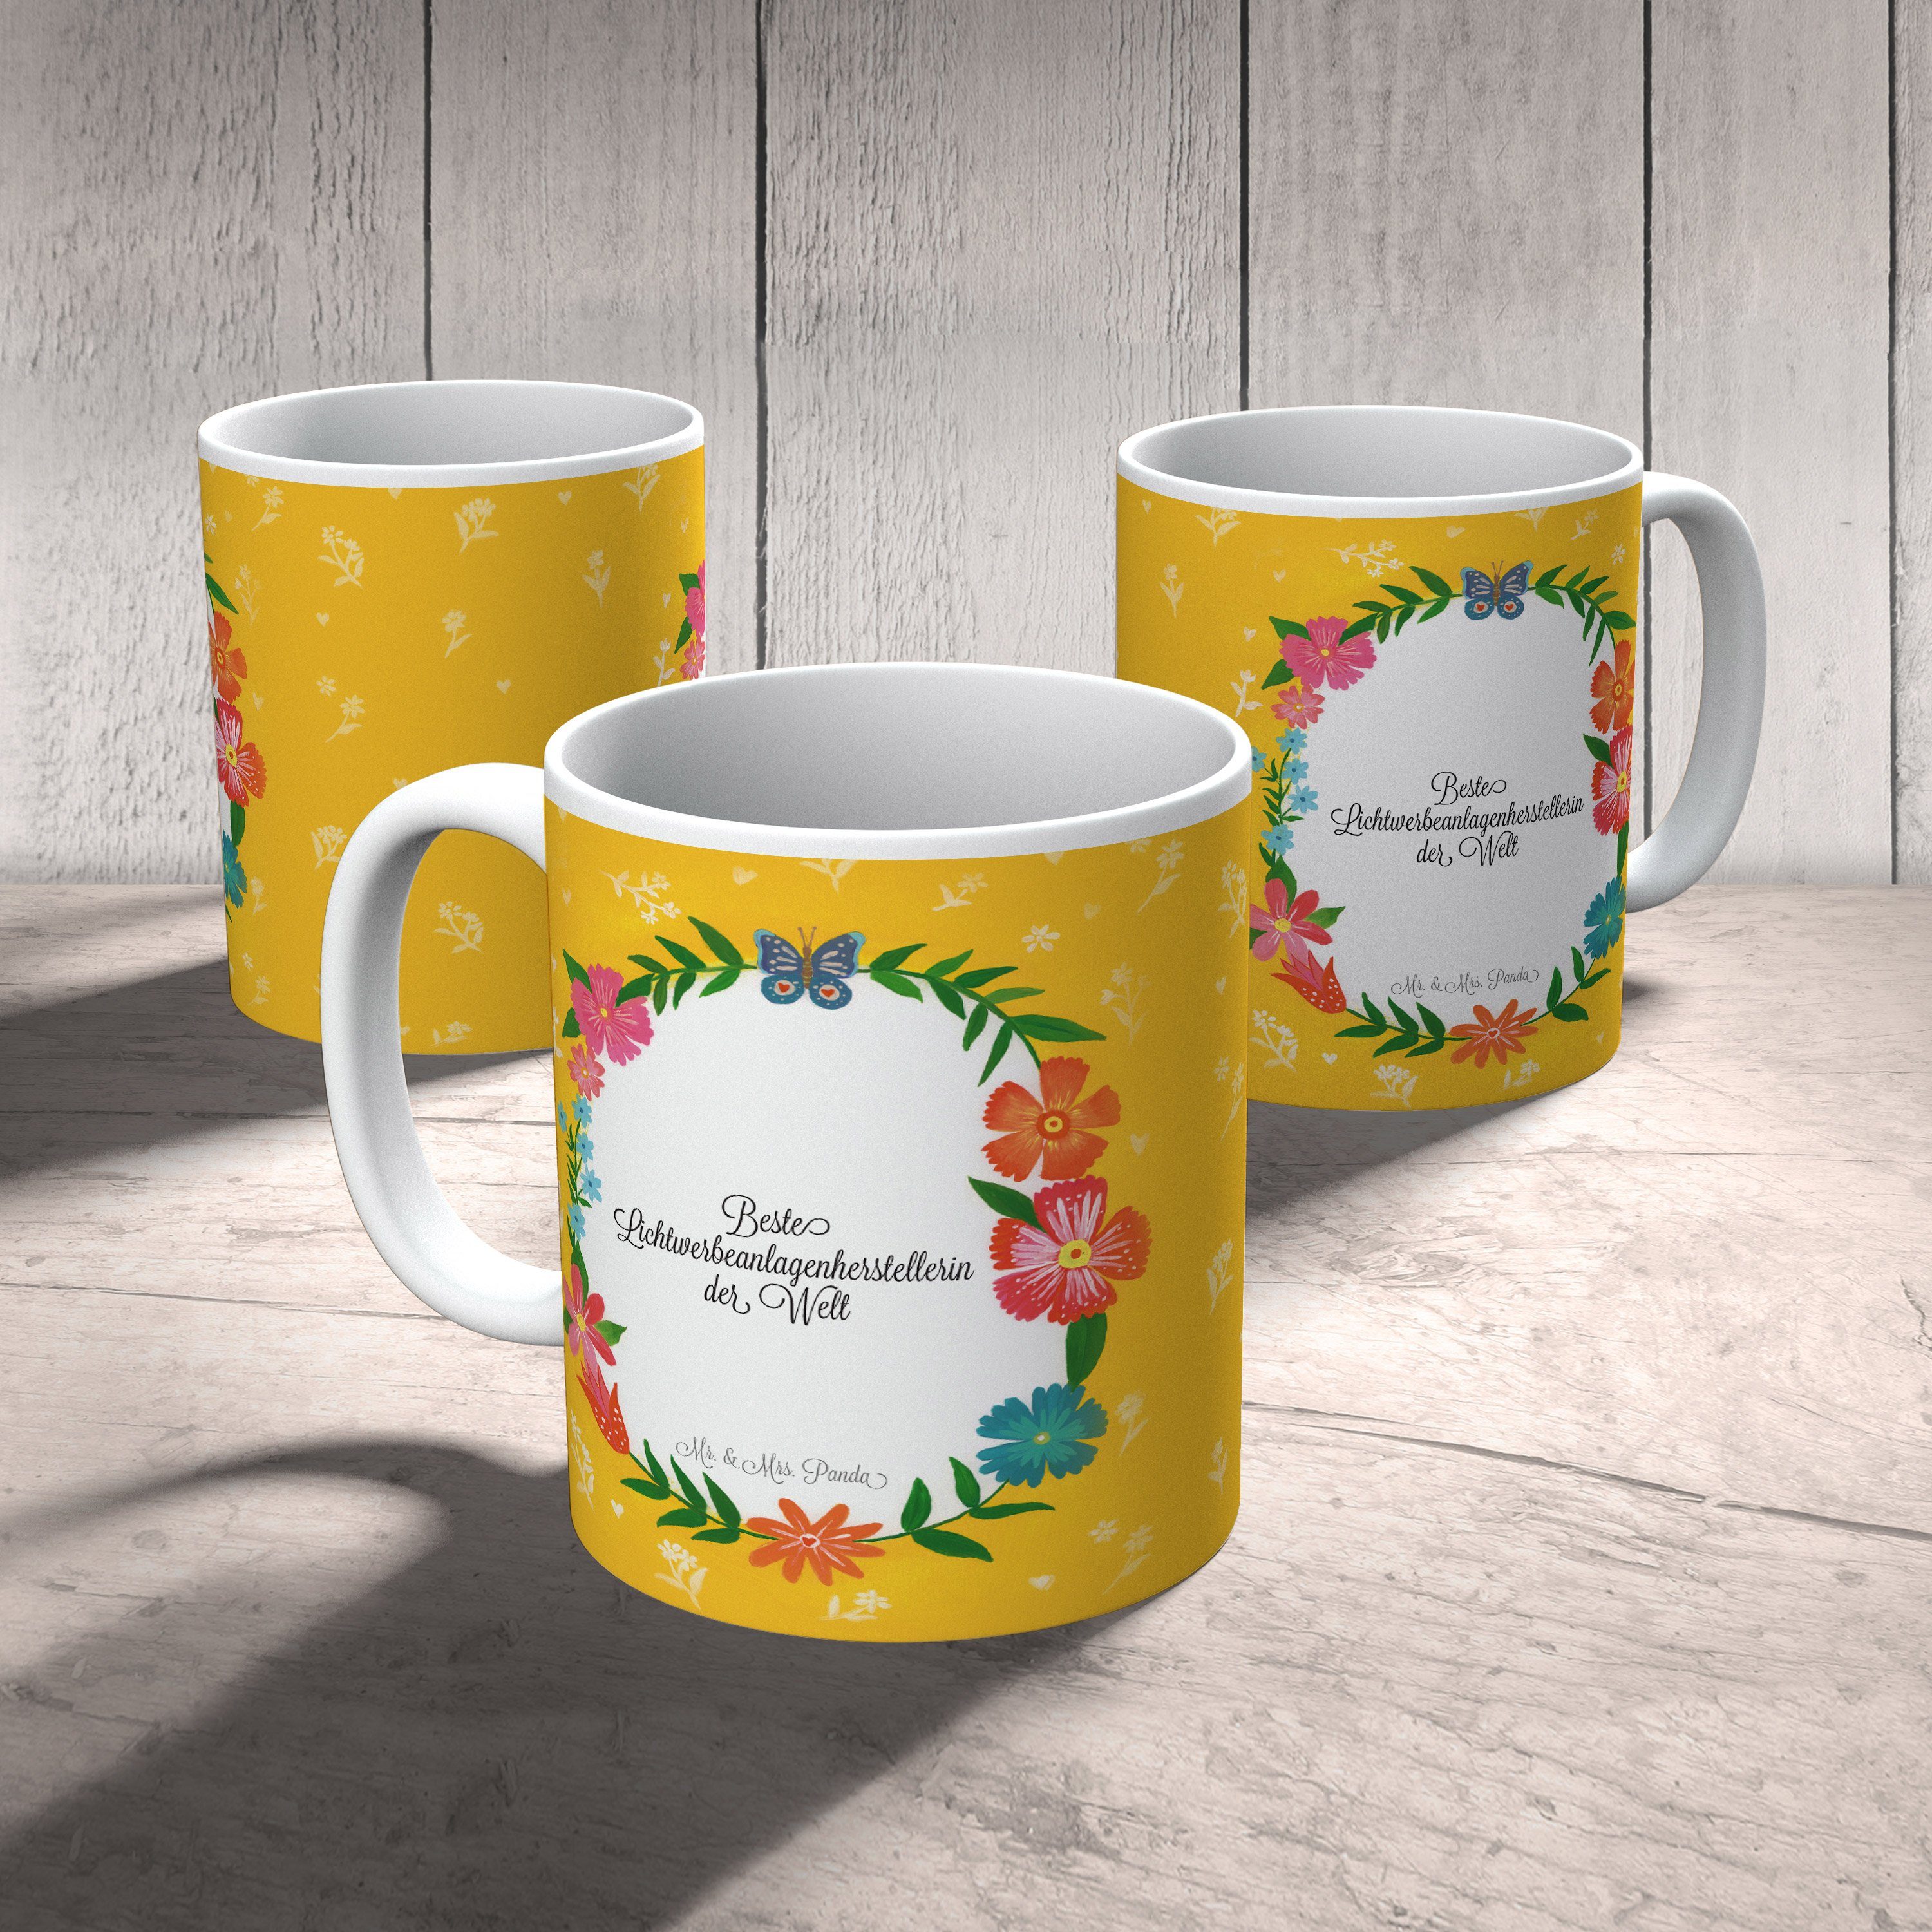 Kaffeebecher, - Geschenk, Tasse & Keramik Panda Mr. Abschied, Ges, Mrs. Lichtwerbeanlagenherstellerin